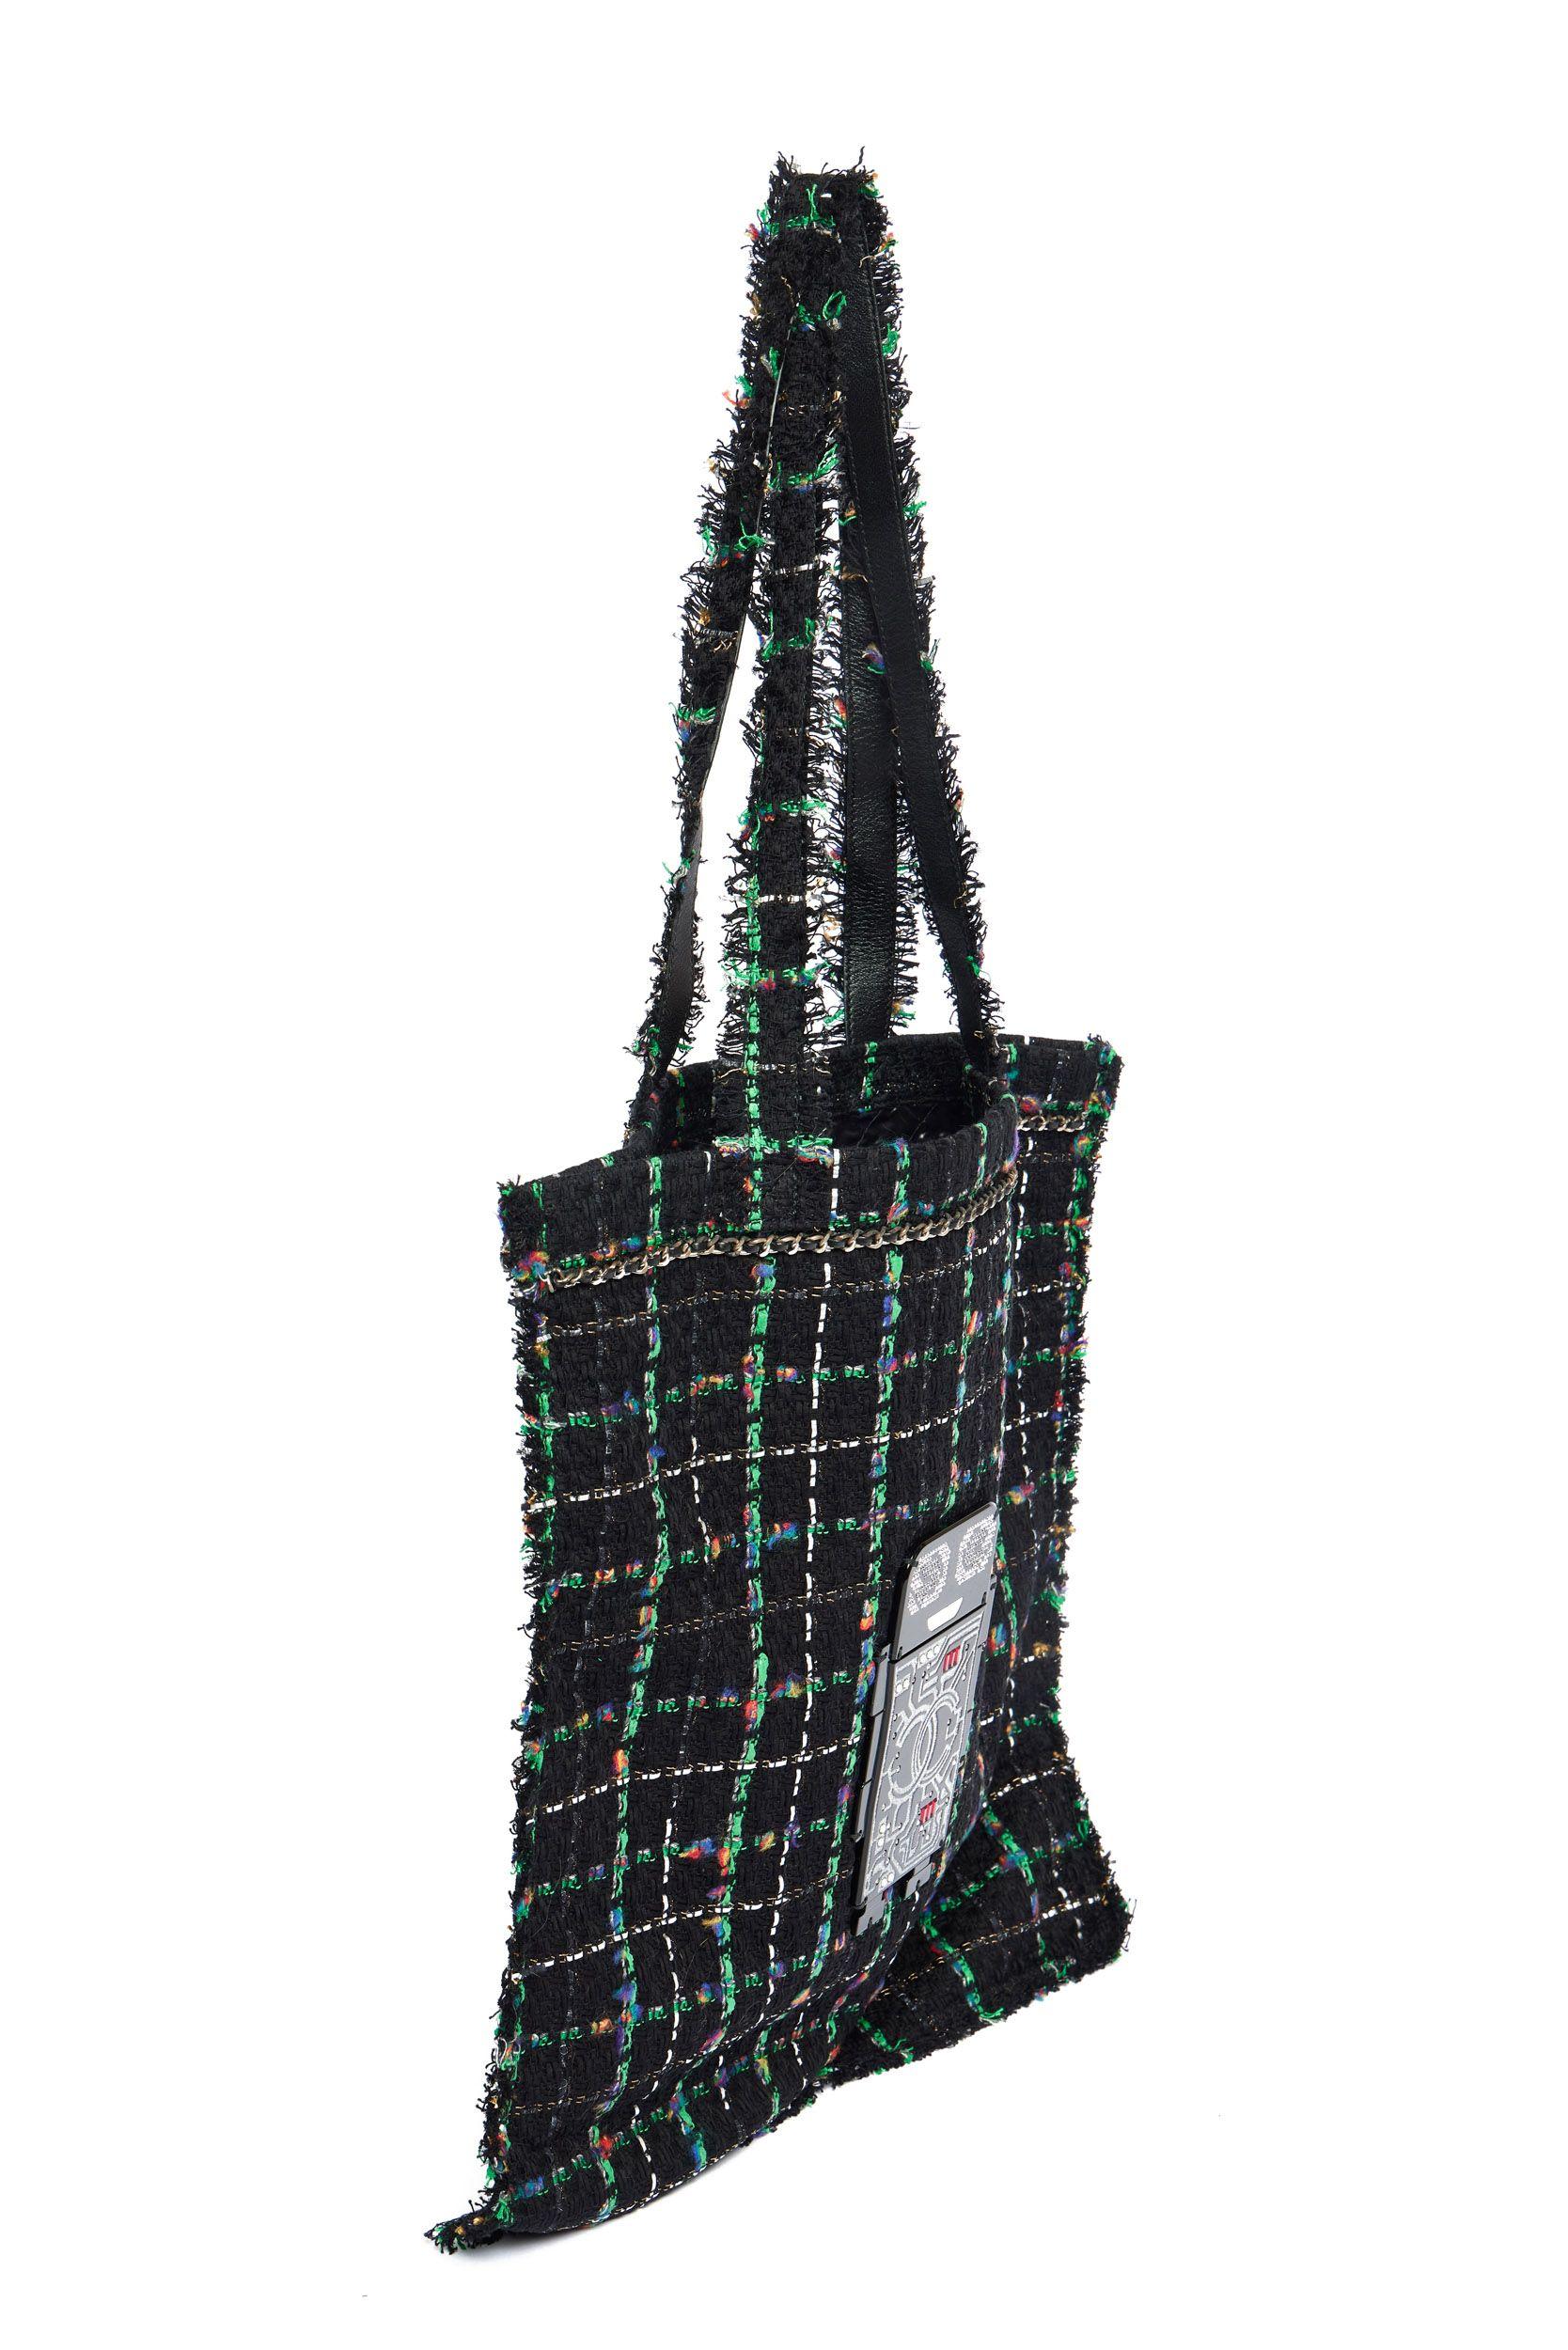 Chanel Tote Bag aus der Robot Collection in schwarzem und grünem gewebtem Tweed. Auf der Vorderseite der Tasche ist ein Roboter angebracht, dessen Körper ein großes CC-Logo zeigt und dessen Augen aus kleinen Strasssteinen bestehen. Die Schulterhöhe